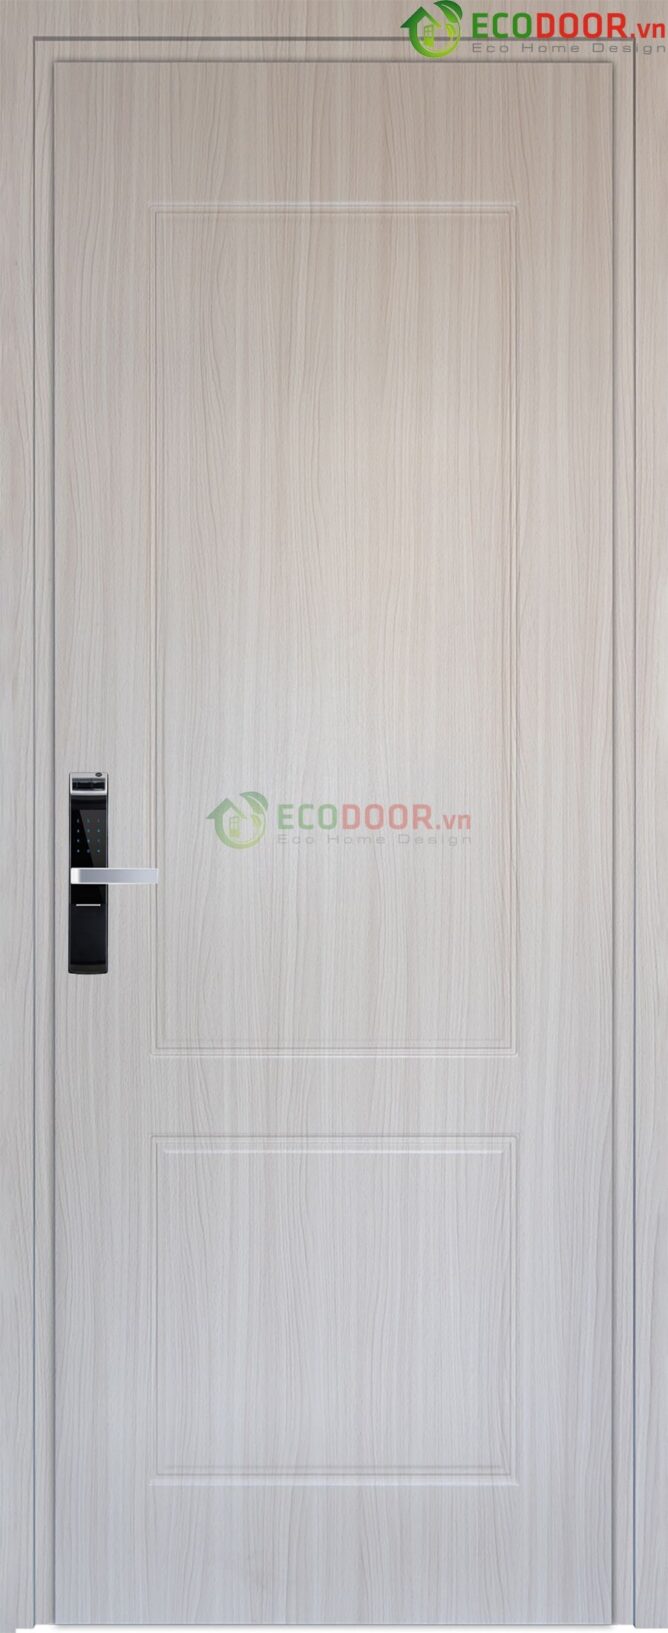 CỬA NHỰA COMPOSITE – EcoDoor™ B01-91-ECD-1-1-668x1633